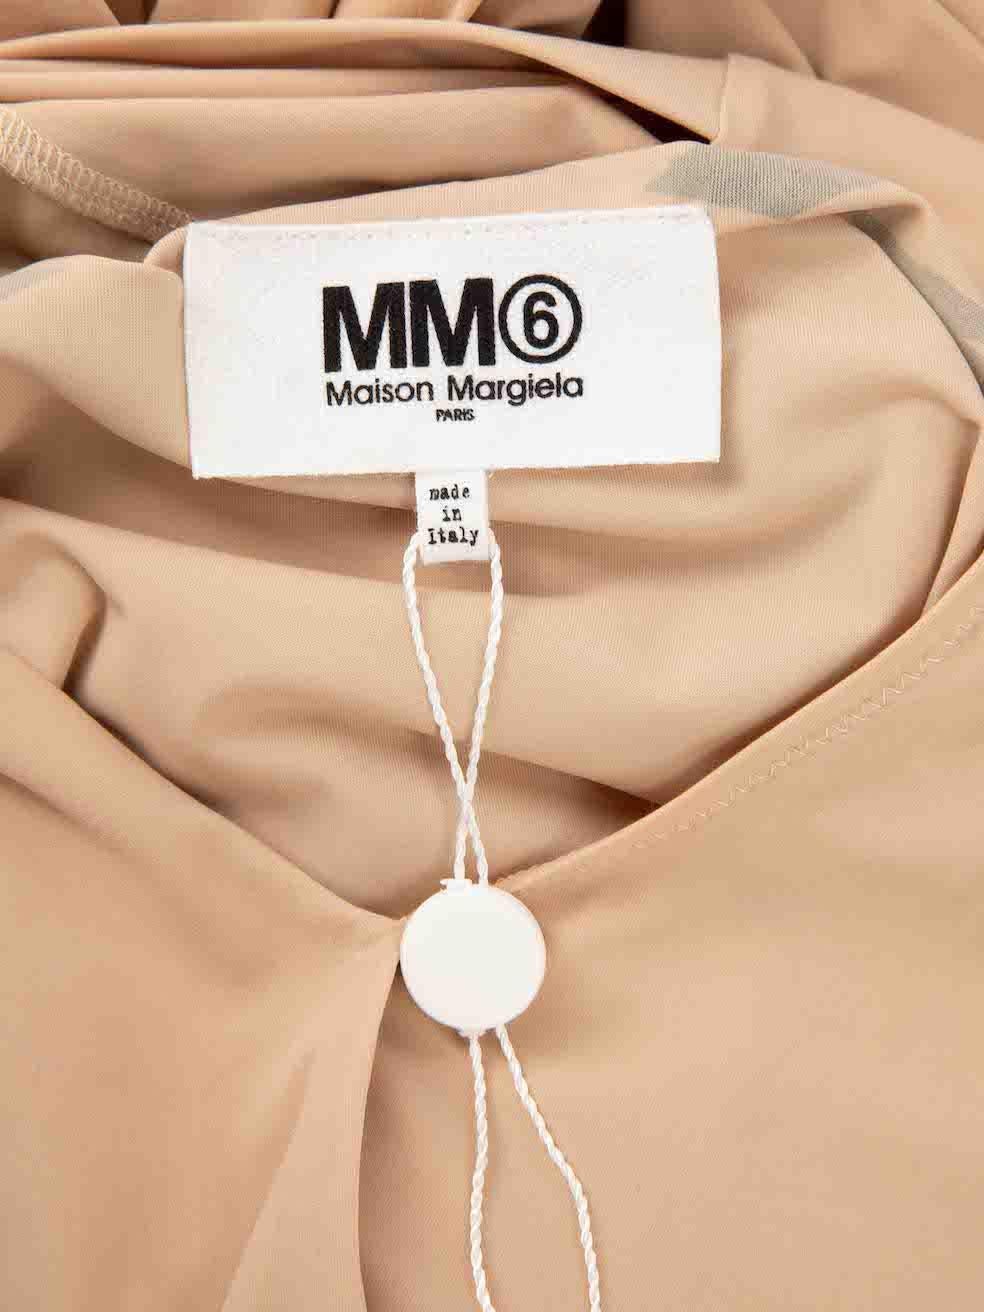 Maison Margiela Women's MM6 Maison Margiela Nude Graphic Print Tie Neck Bodysuit 7